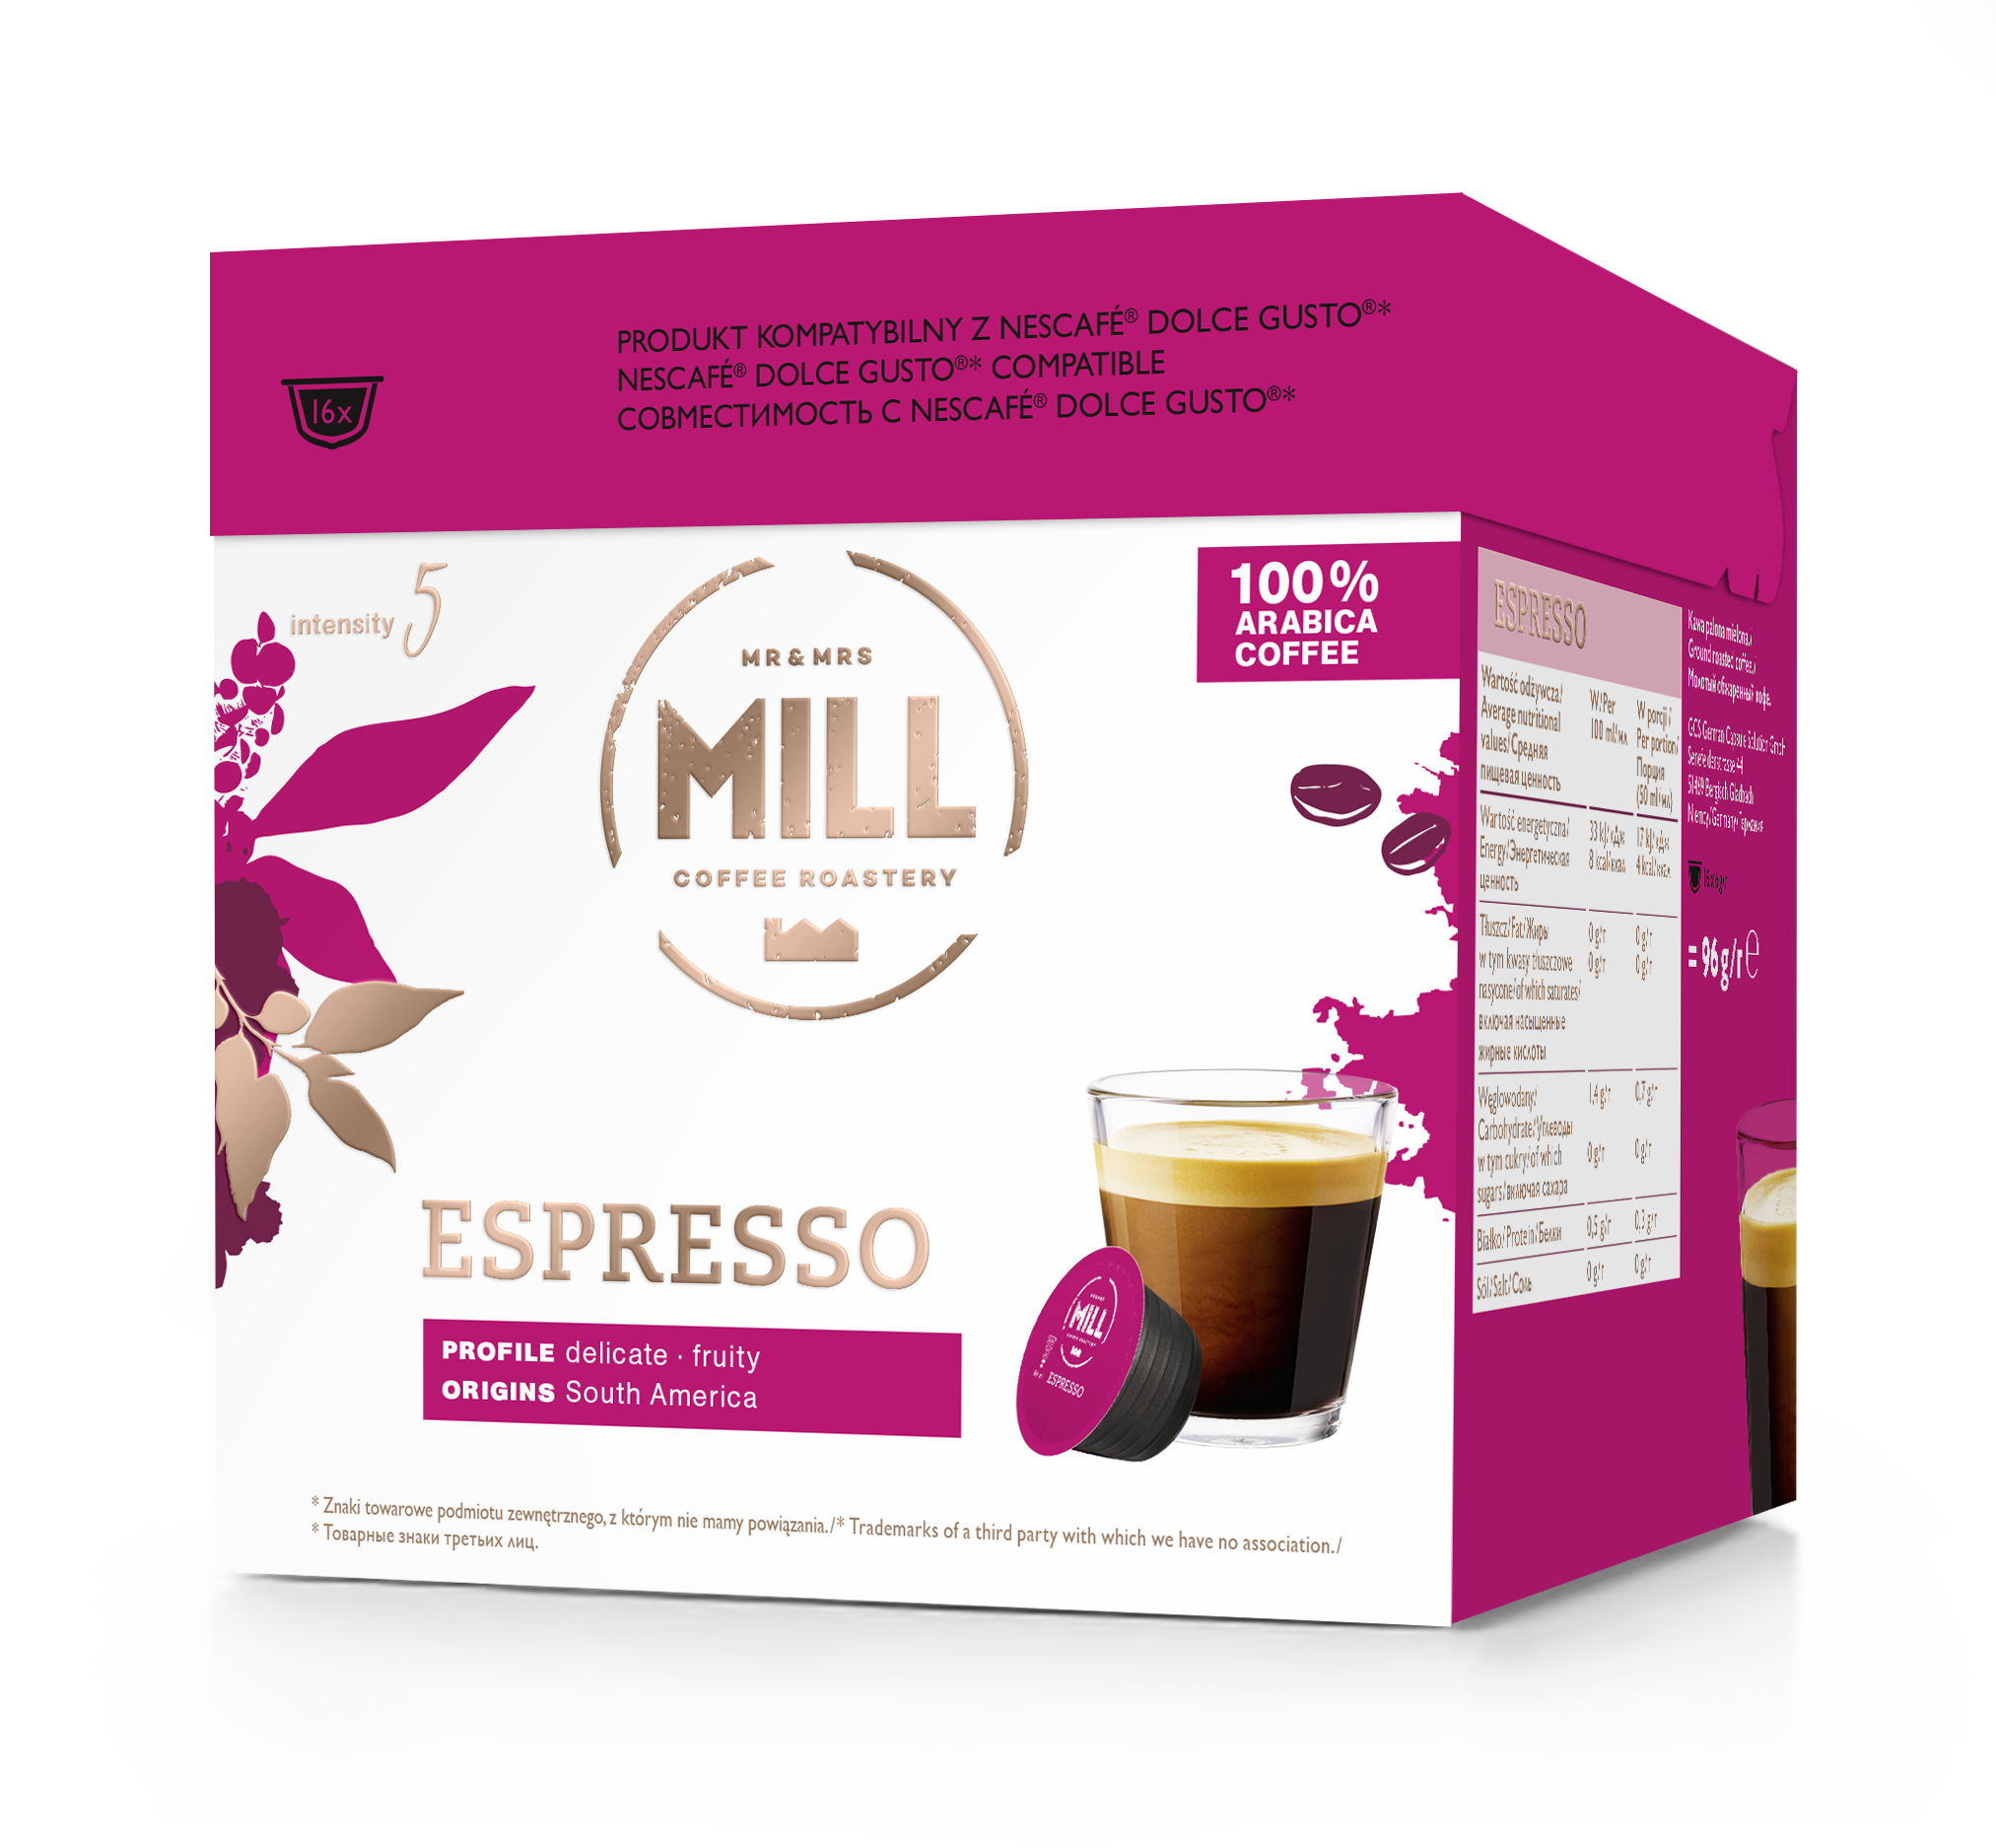 Mr&Mrs Mill Espressokapseln sind mit Dolce Gusto kompatibel